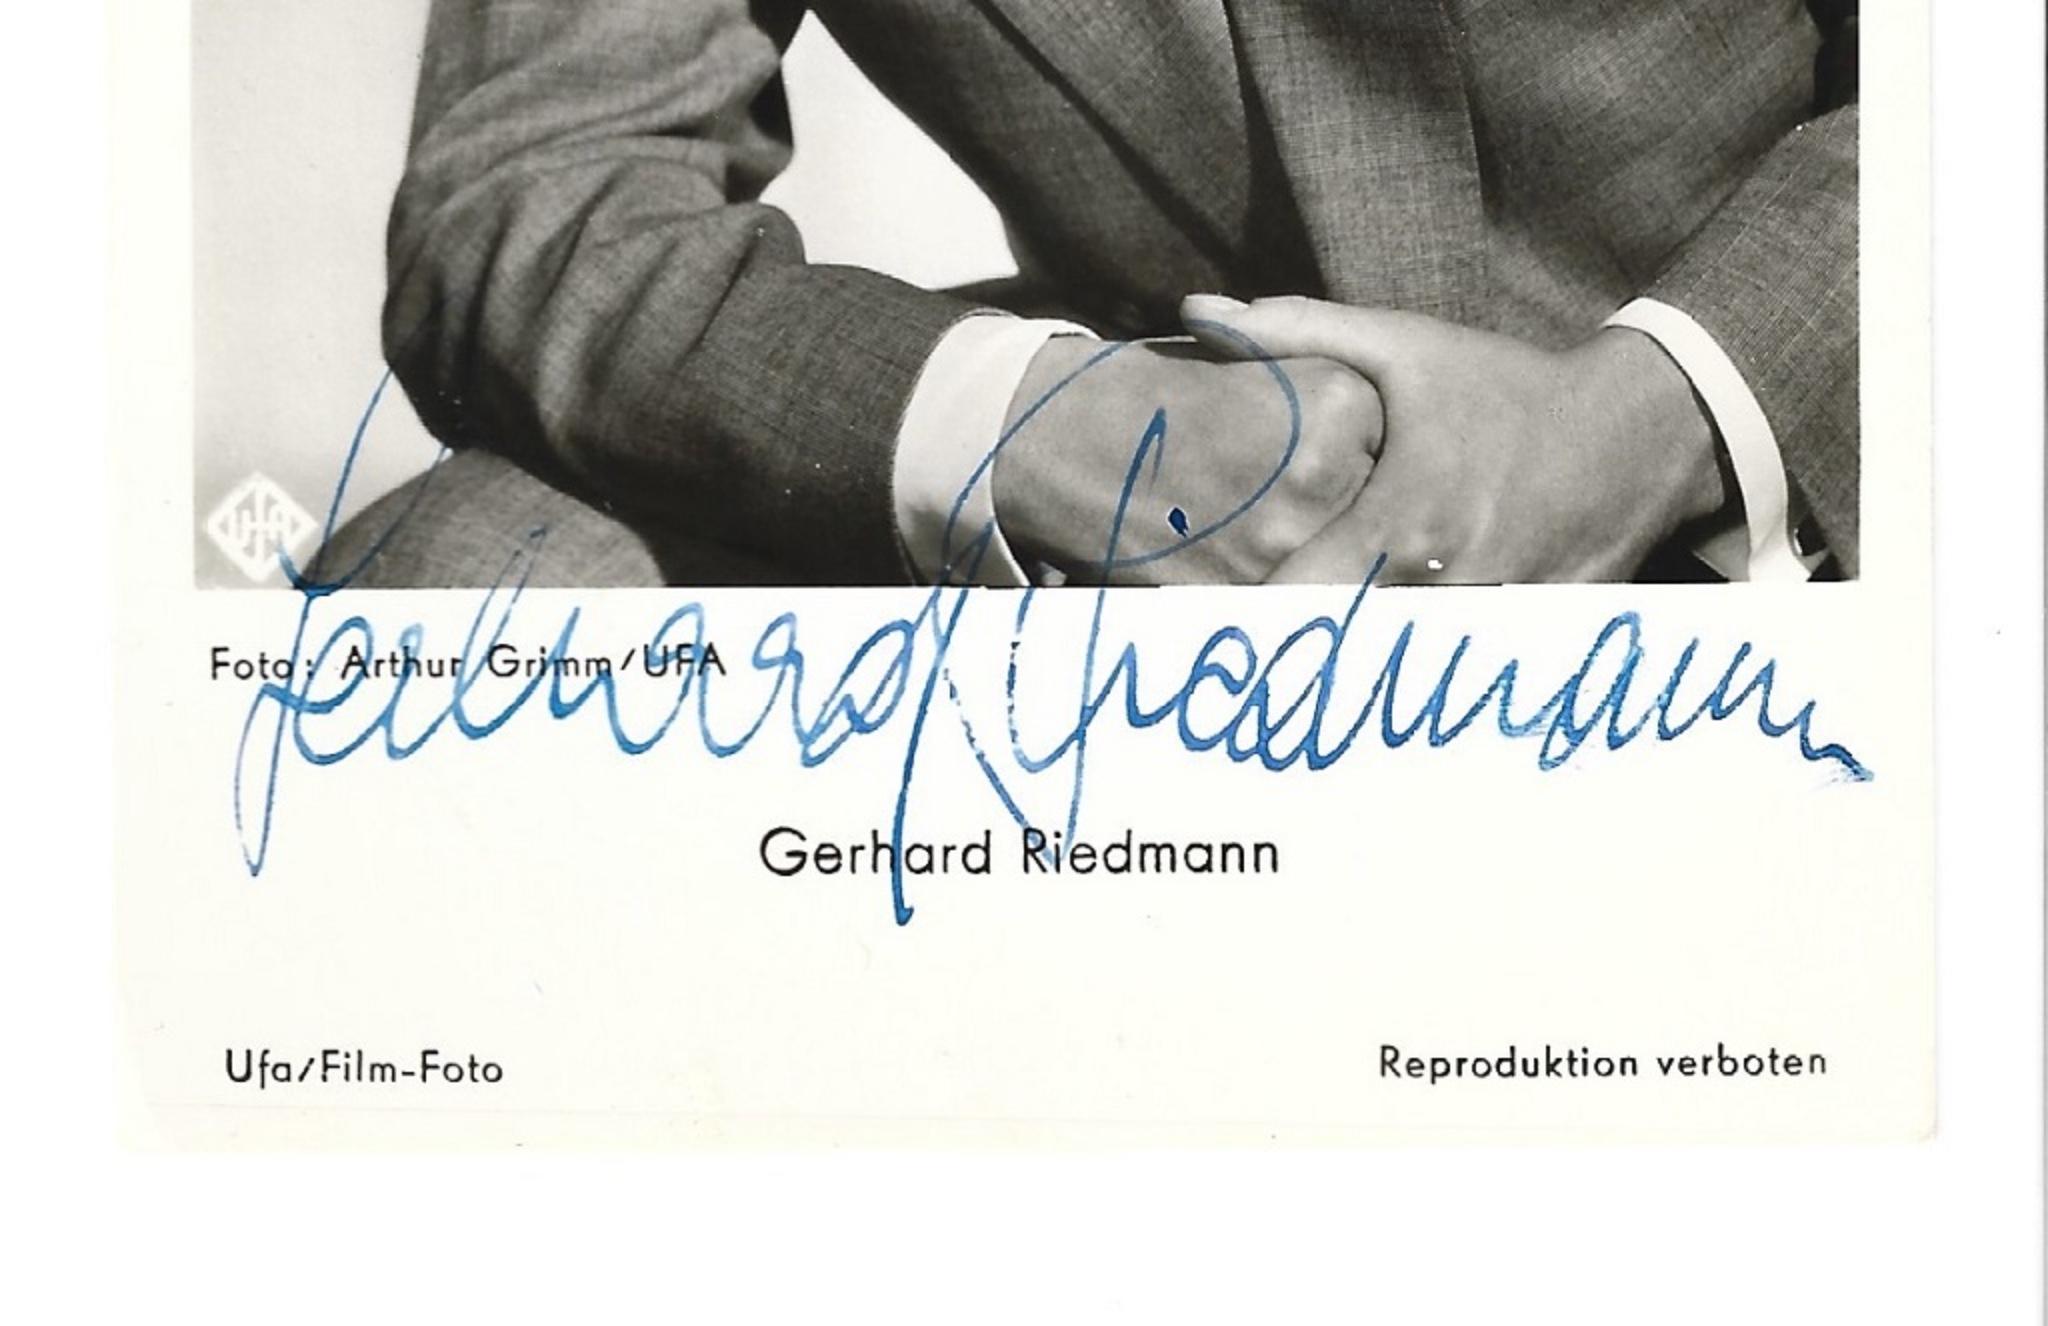 Autographiertes Postkartenplakat von Gerhard Riedmann - Vintage b/w Postcard - 1950er Jahre – Photograph von Unknown